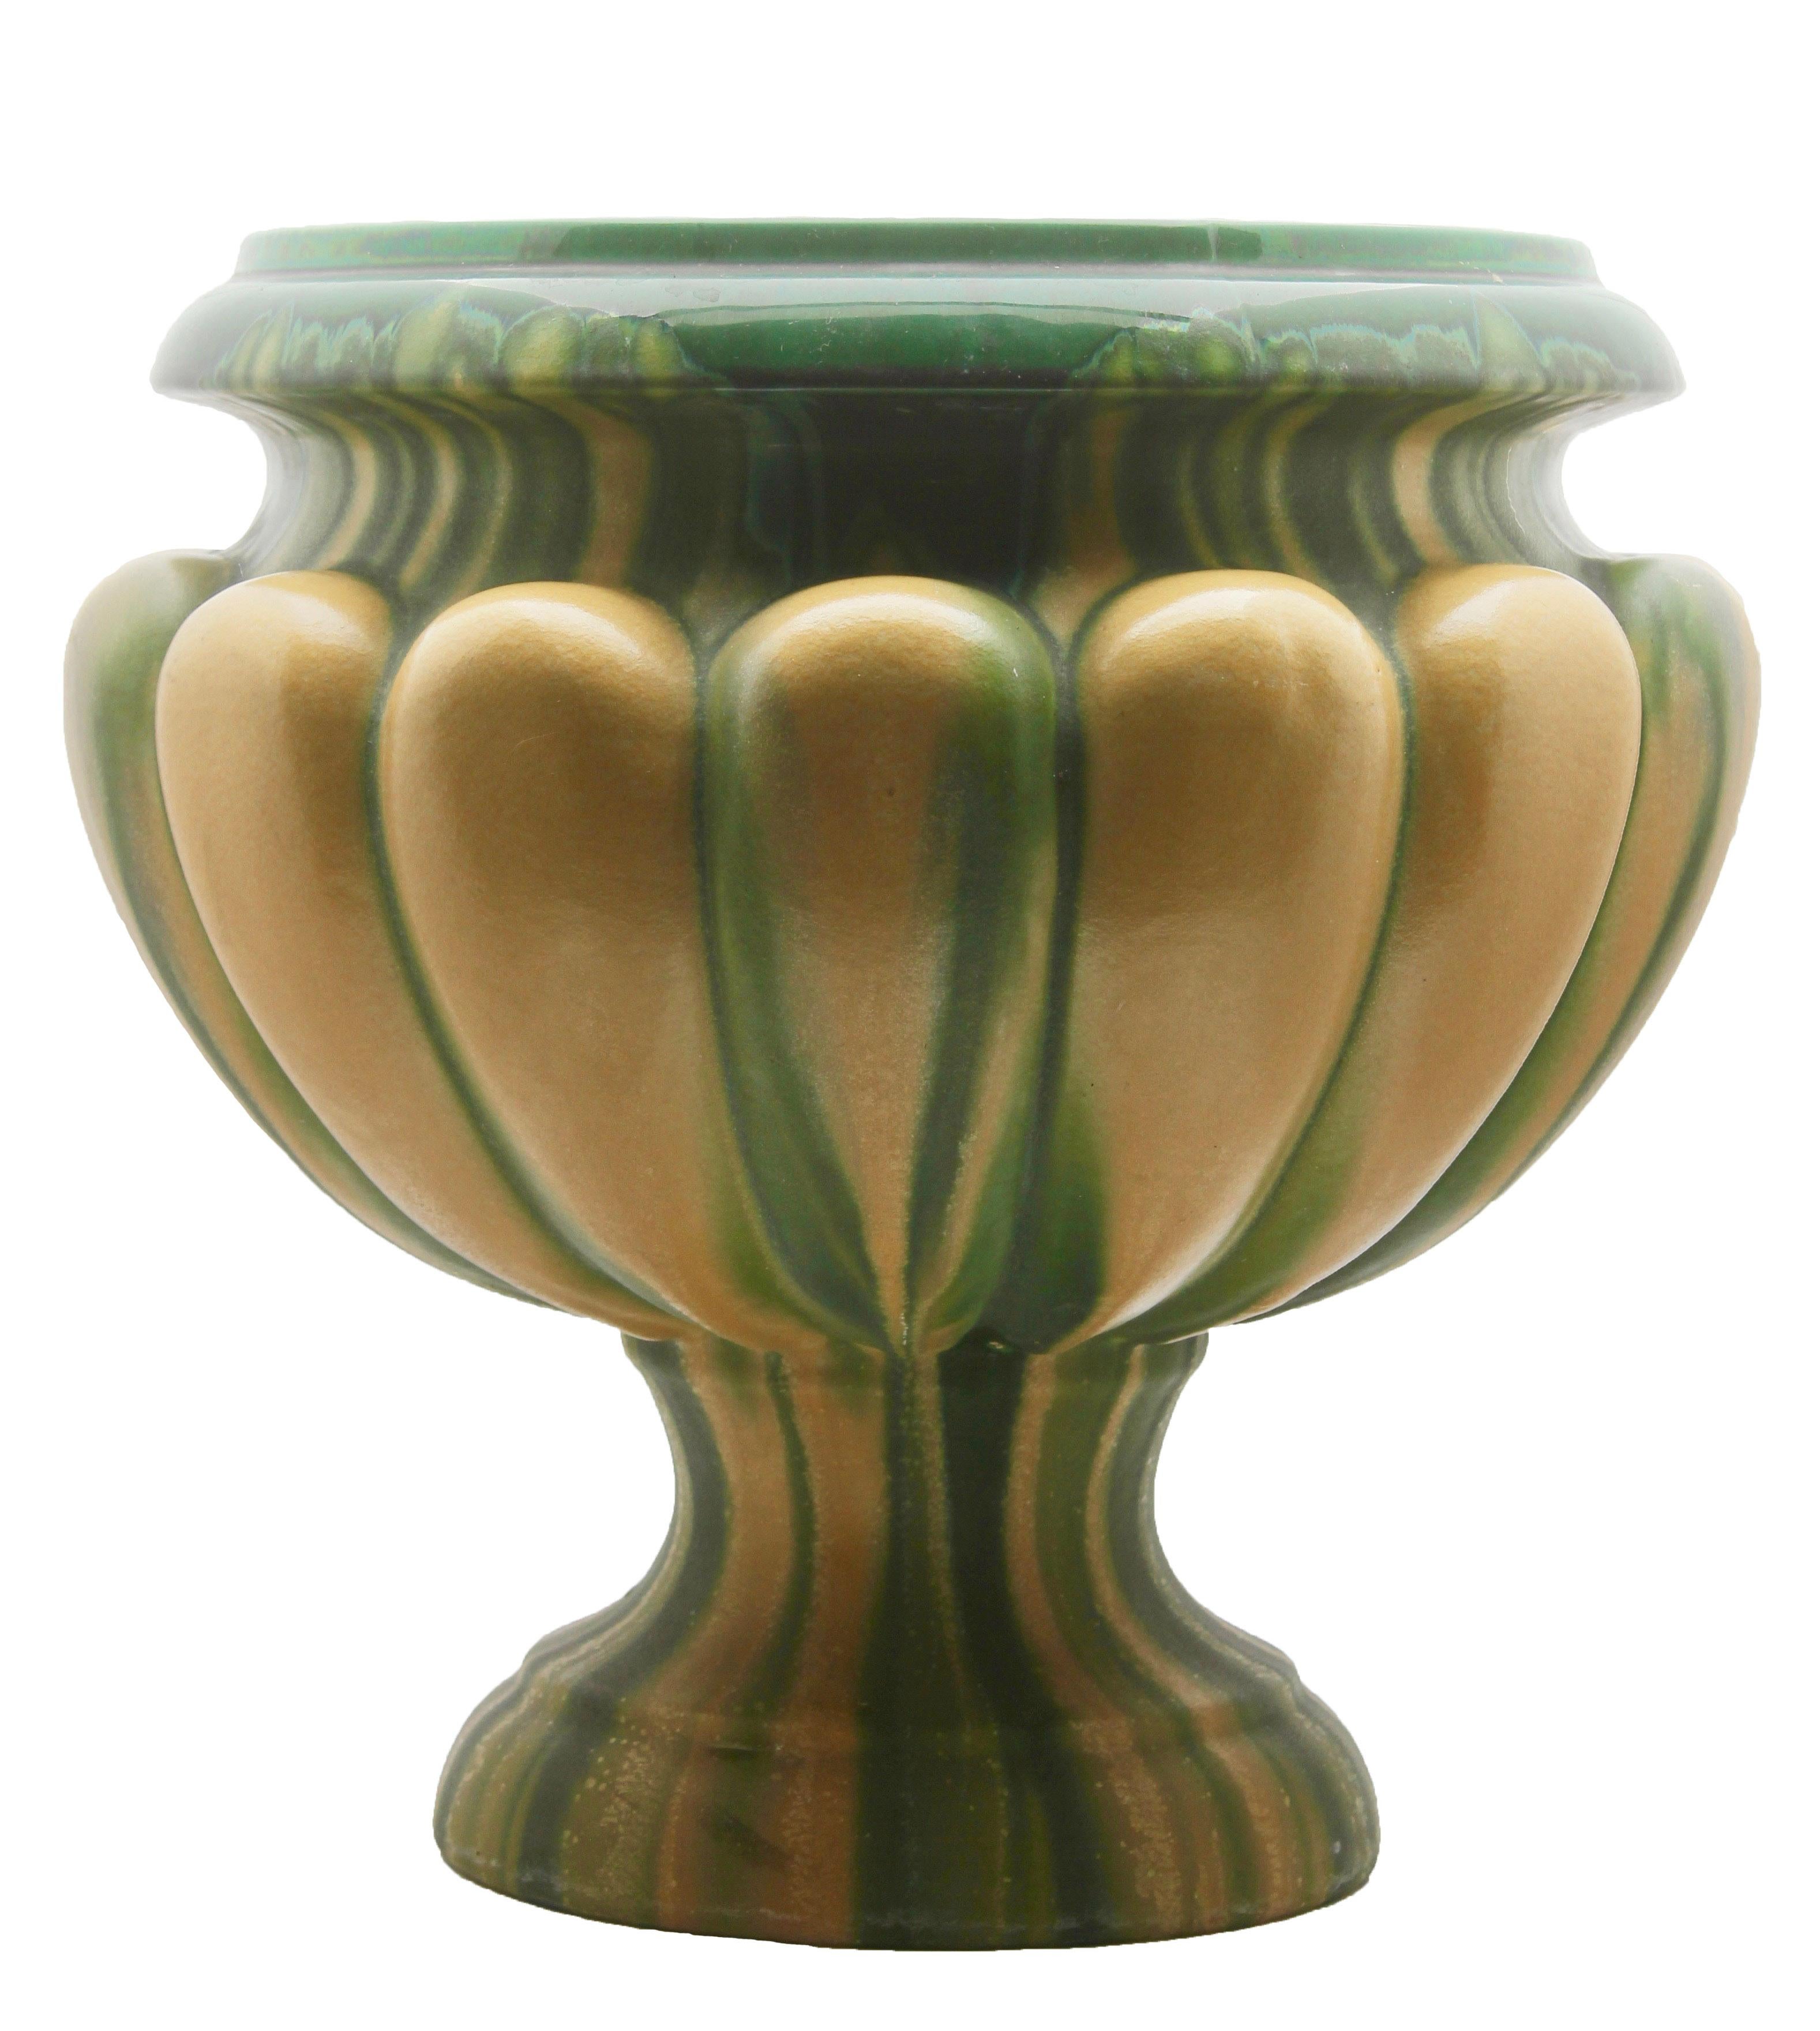 Glazed Art Nouveau Large Ceramic Jardinière on Stand, Belgium, Excellent Condition